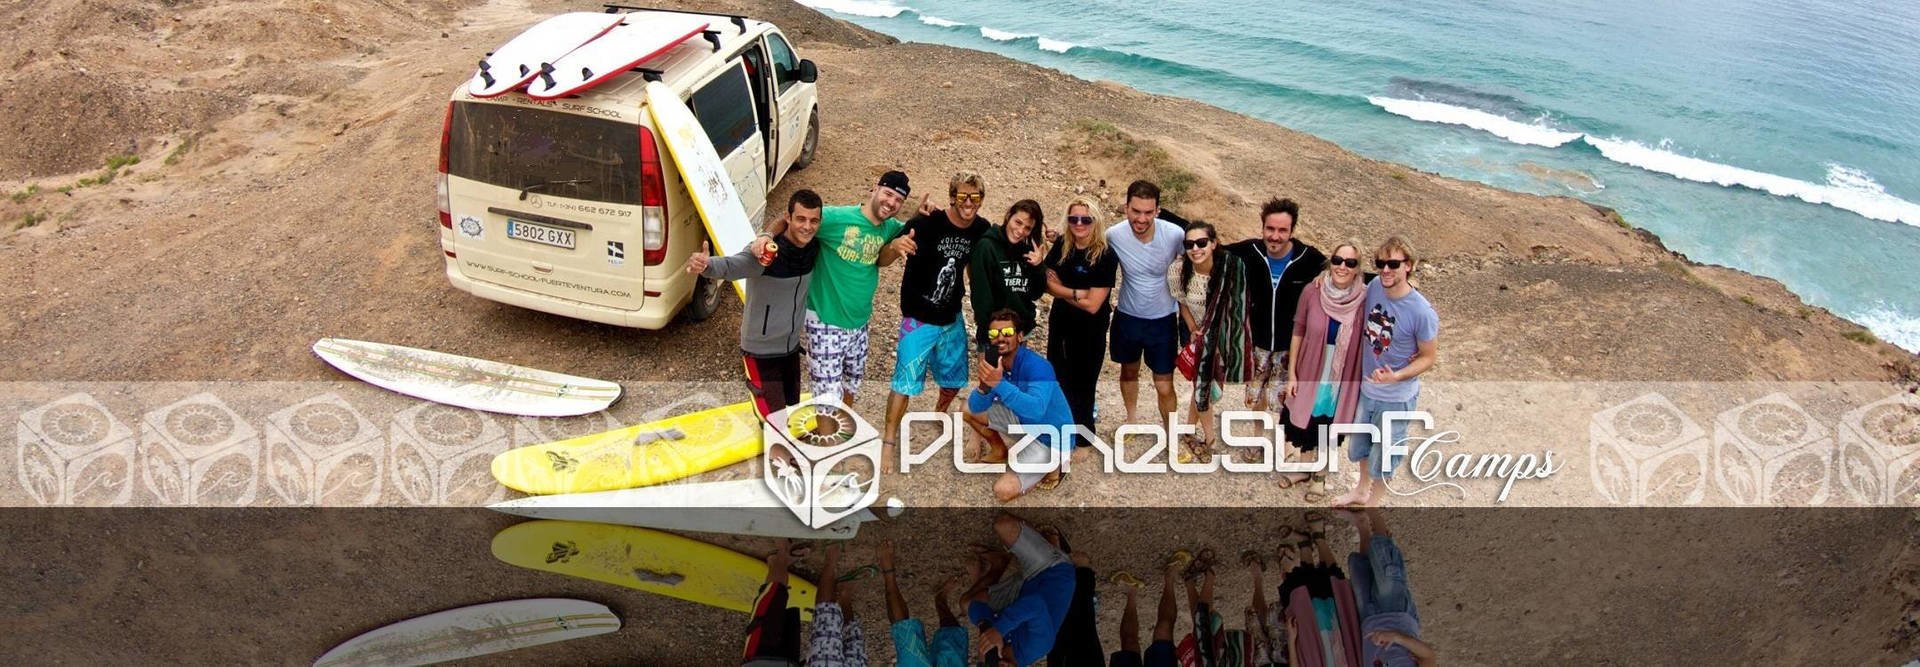 Planet Surf nach dem Kurs in den Kanarischen Inseln